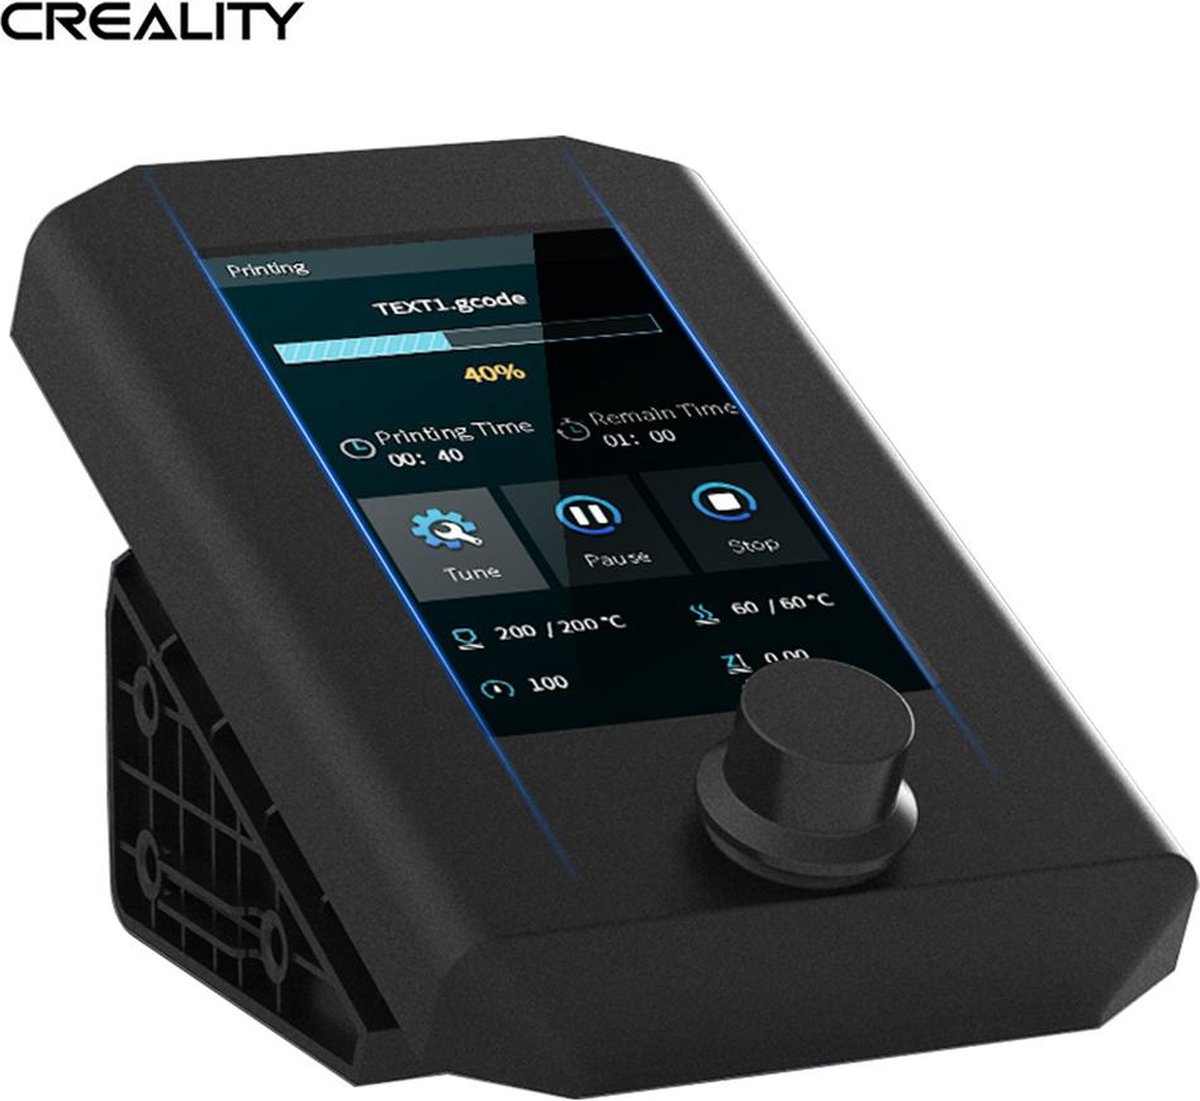 Creality - Ender-3 V2 intelligent LCD screen kit